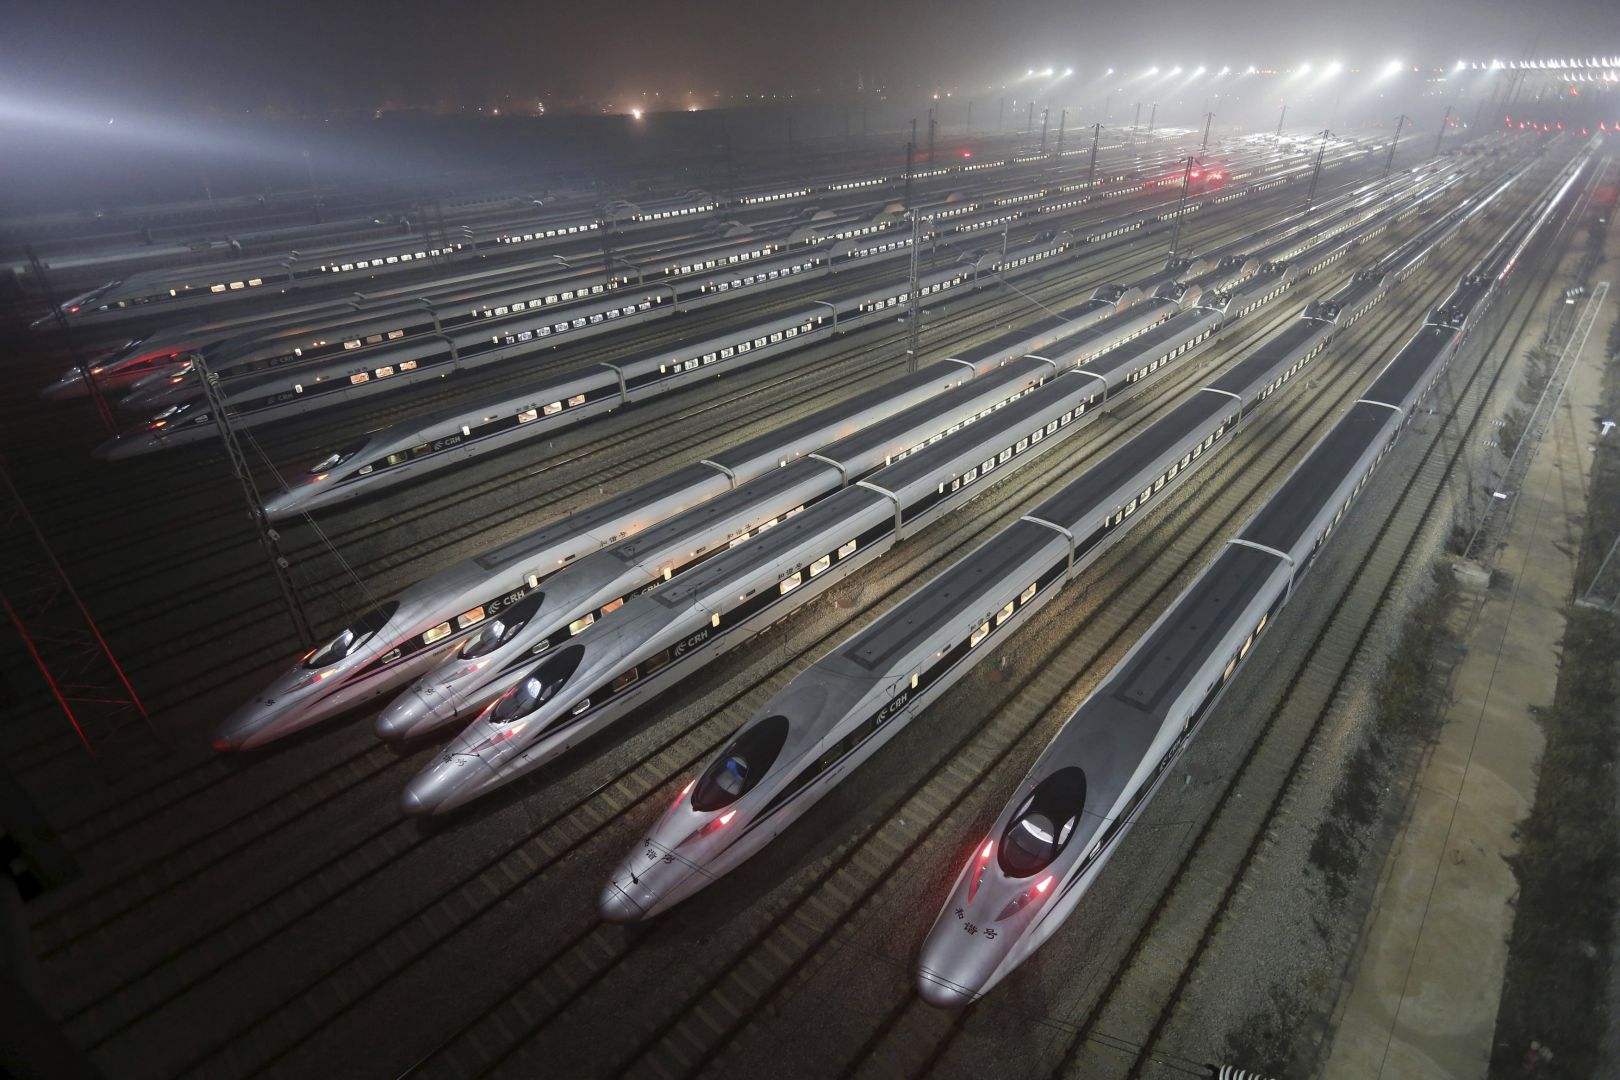 中国春运高铁引老外羡慕,印度网友:我们的高铁